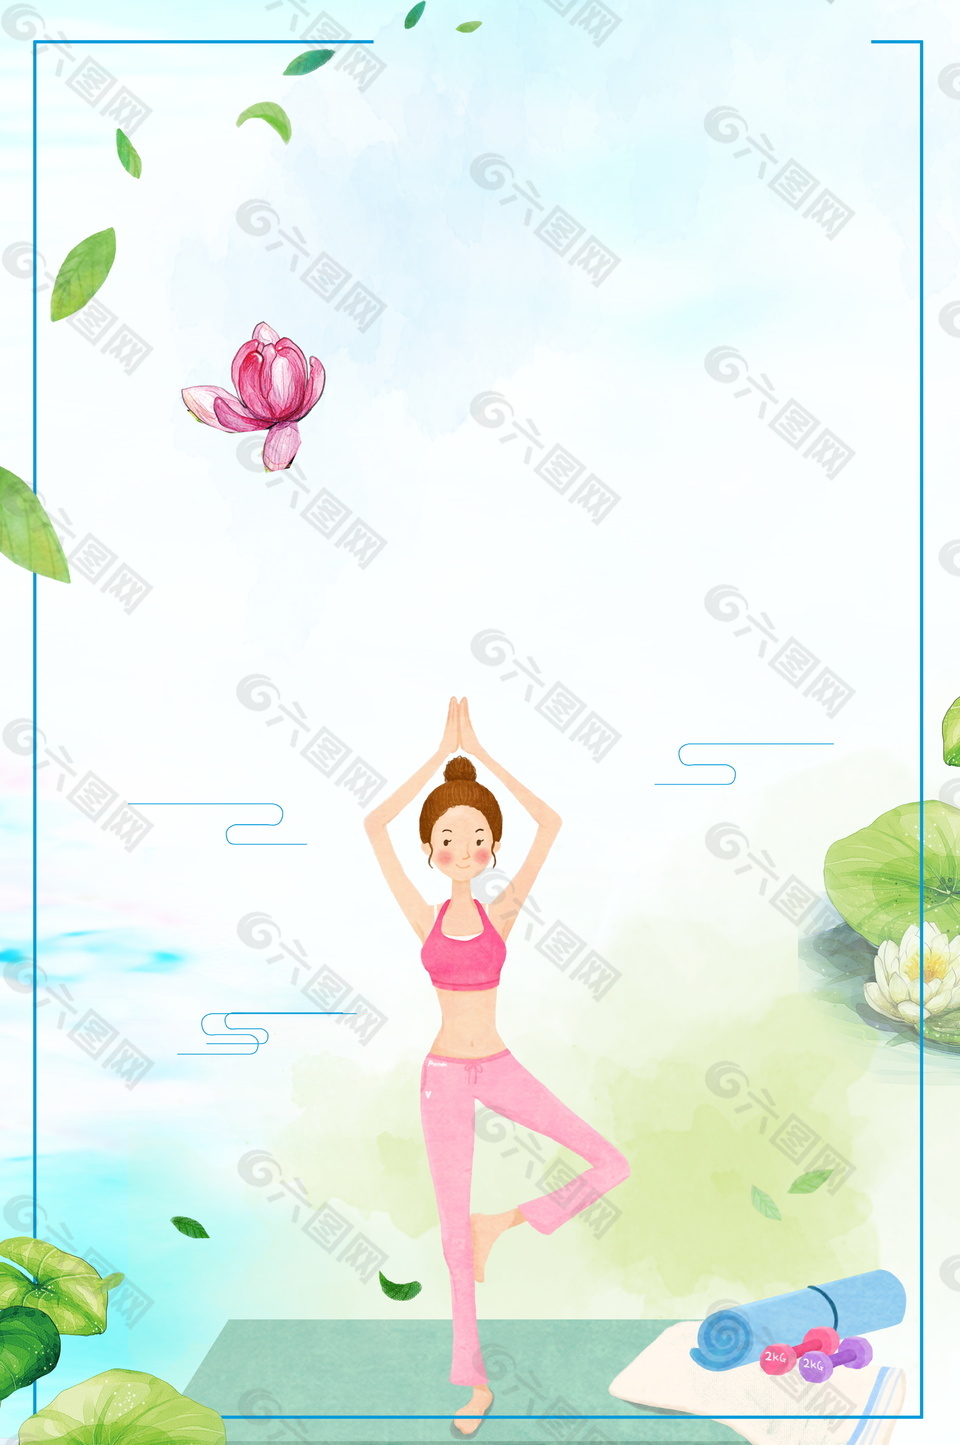 卡通可爱瑜珈女孩背景素材